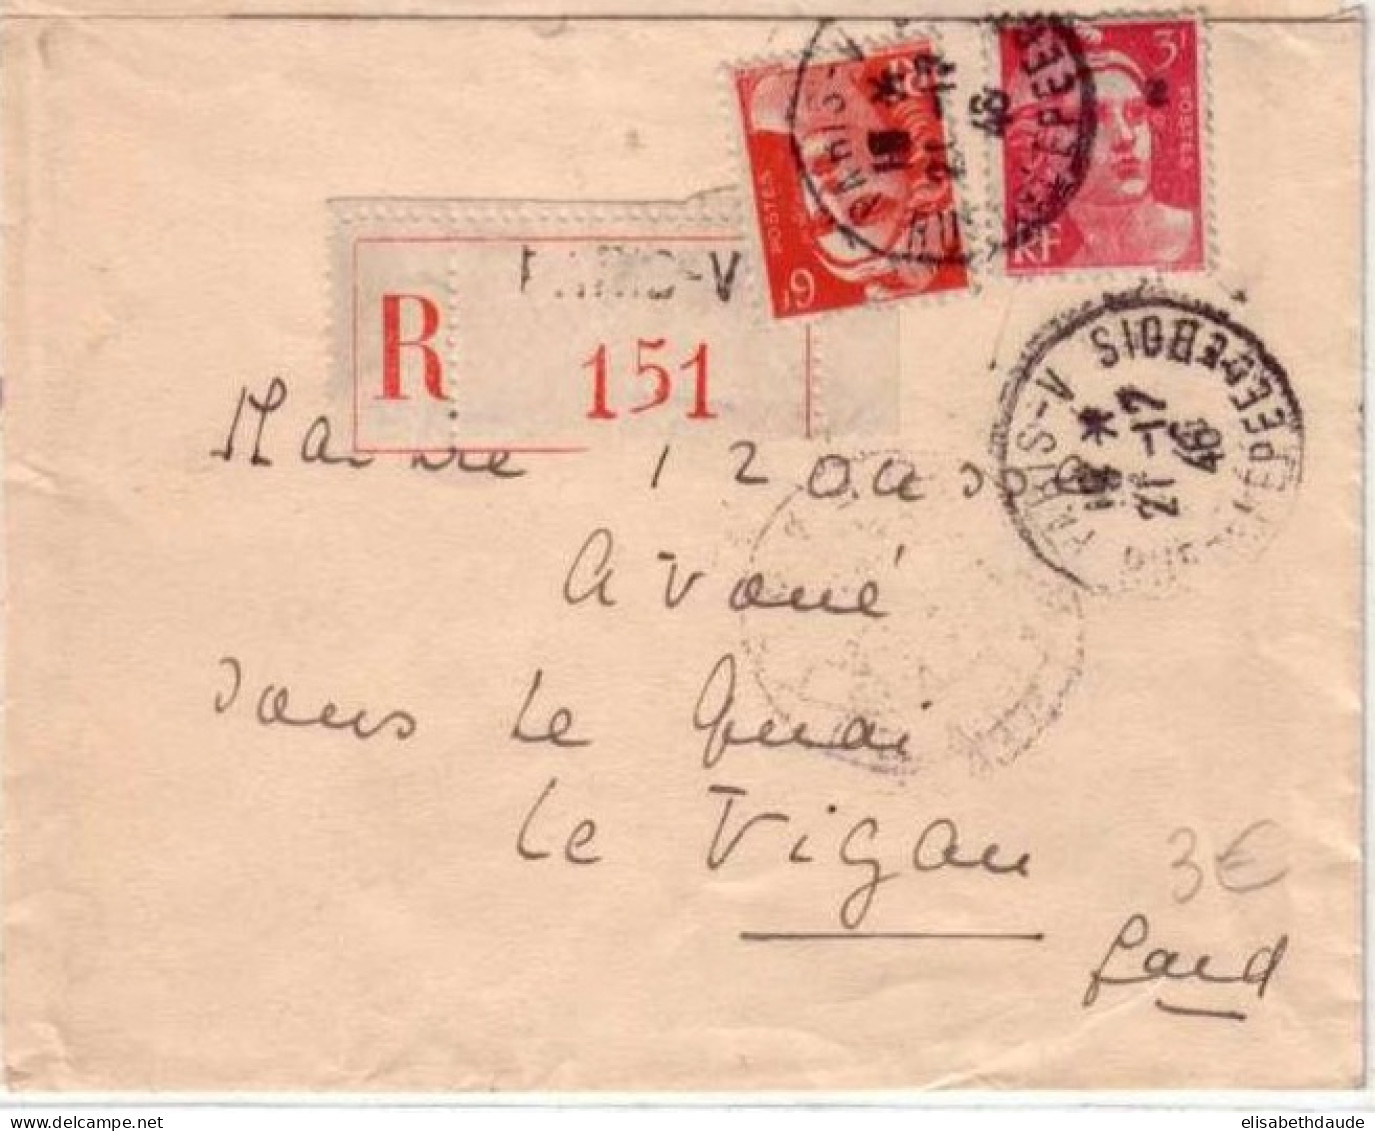 GANDON -Yvert N° 721+716 Sur LETTRE RECOMMANDEE De PARIS (V) Pour LE VIGAN (GARD) -1946 - 1945-54 Marianne Of Gandon